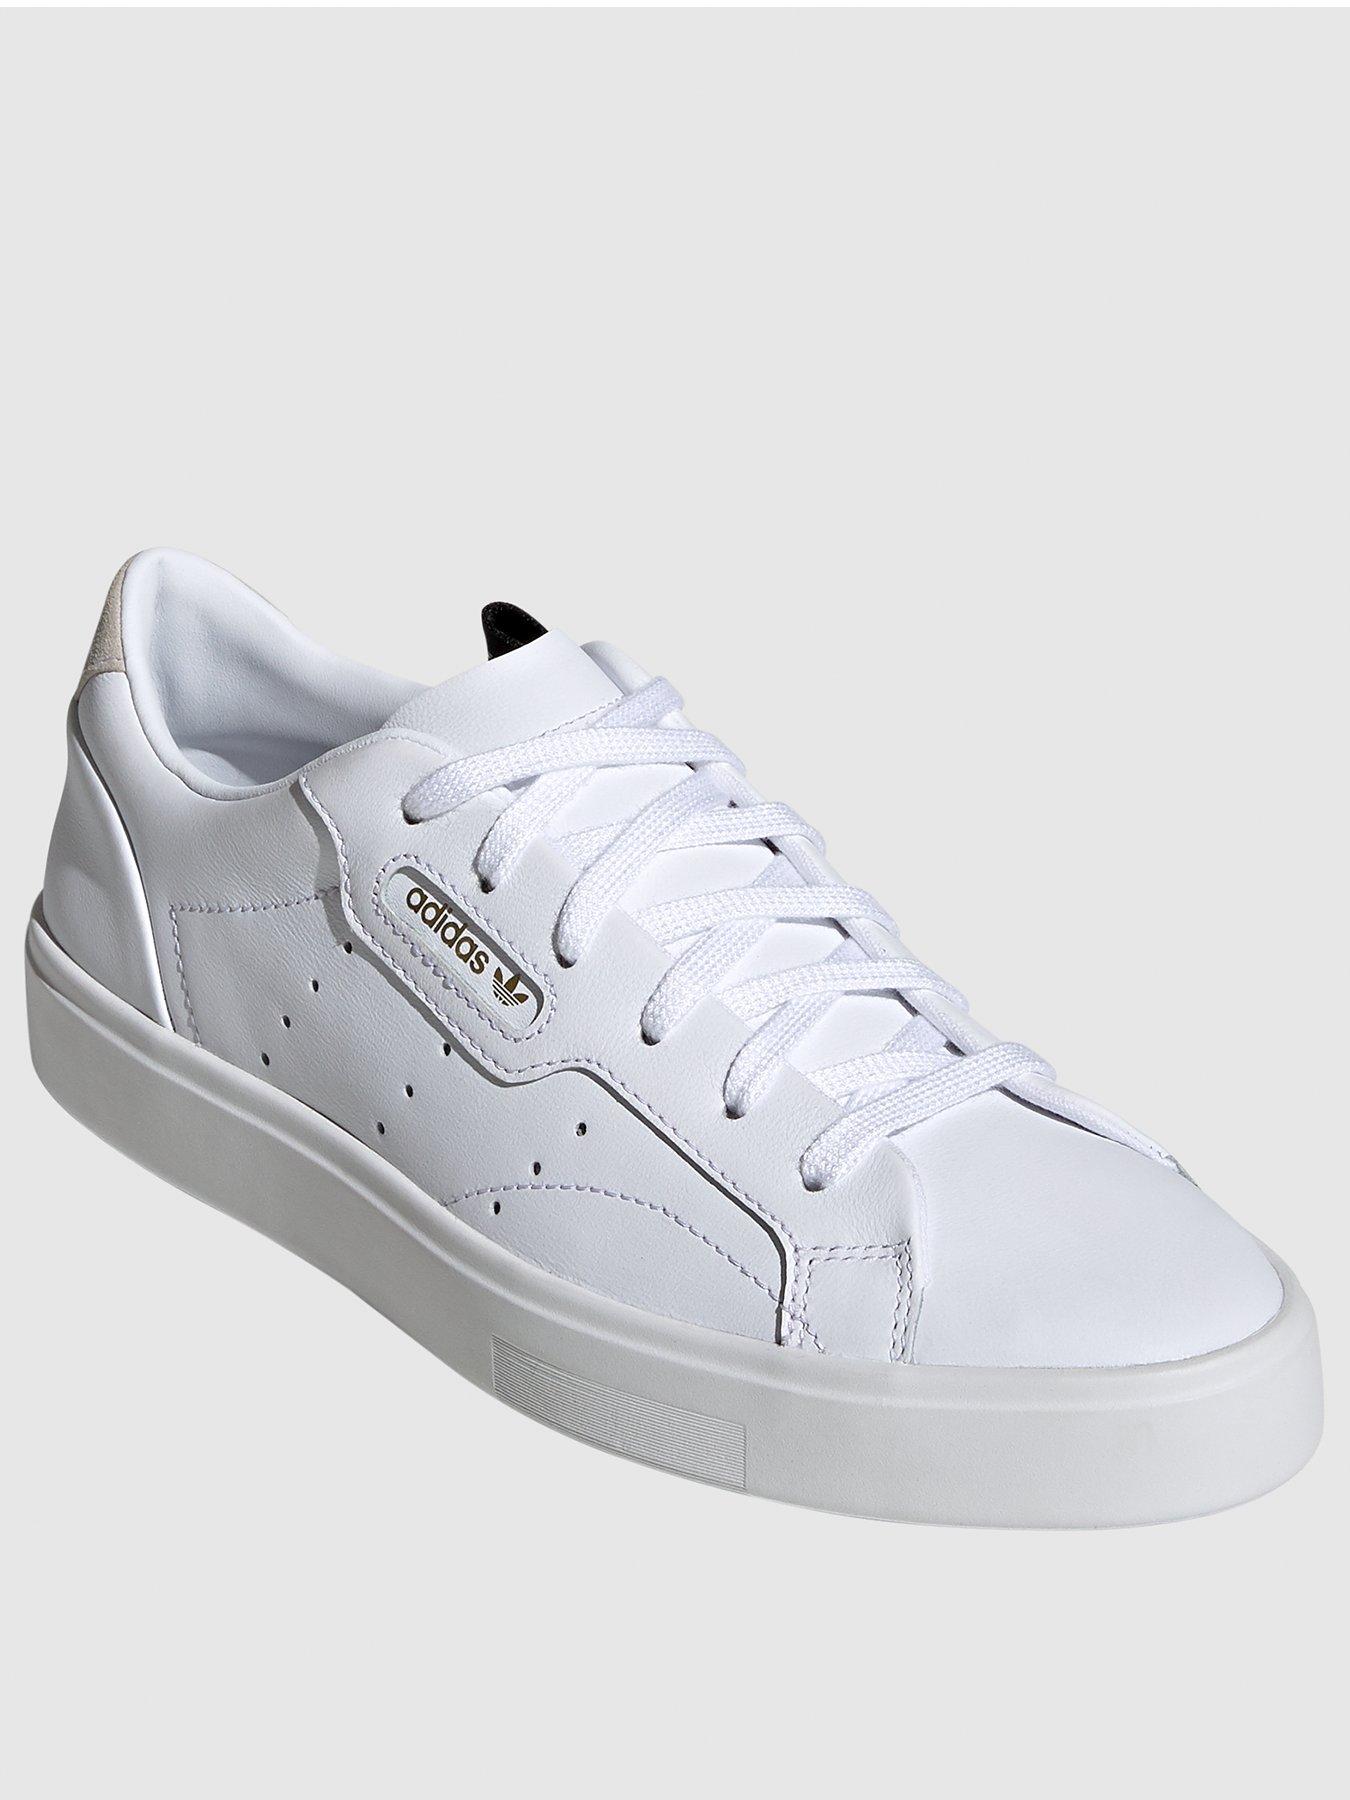 sleek adidas white